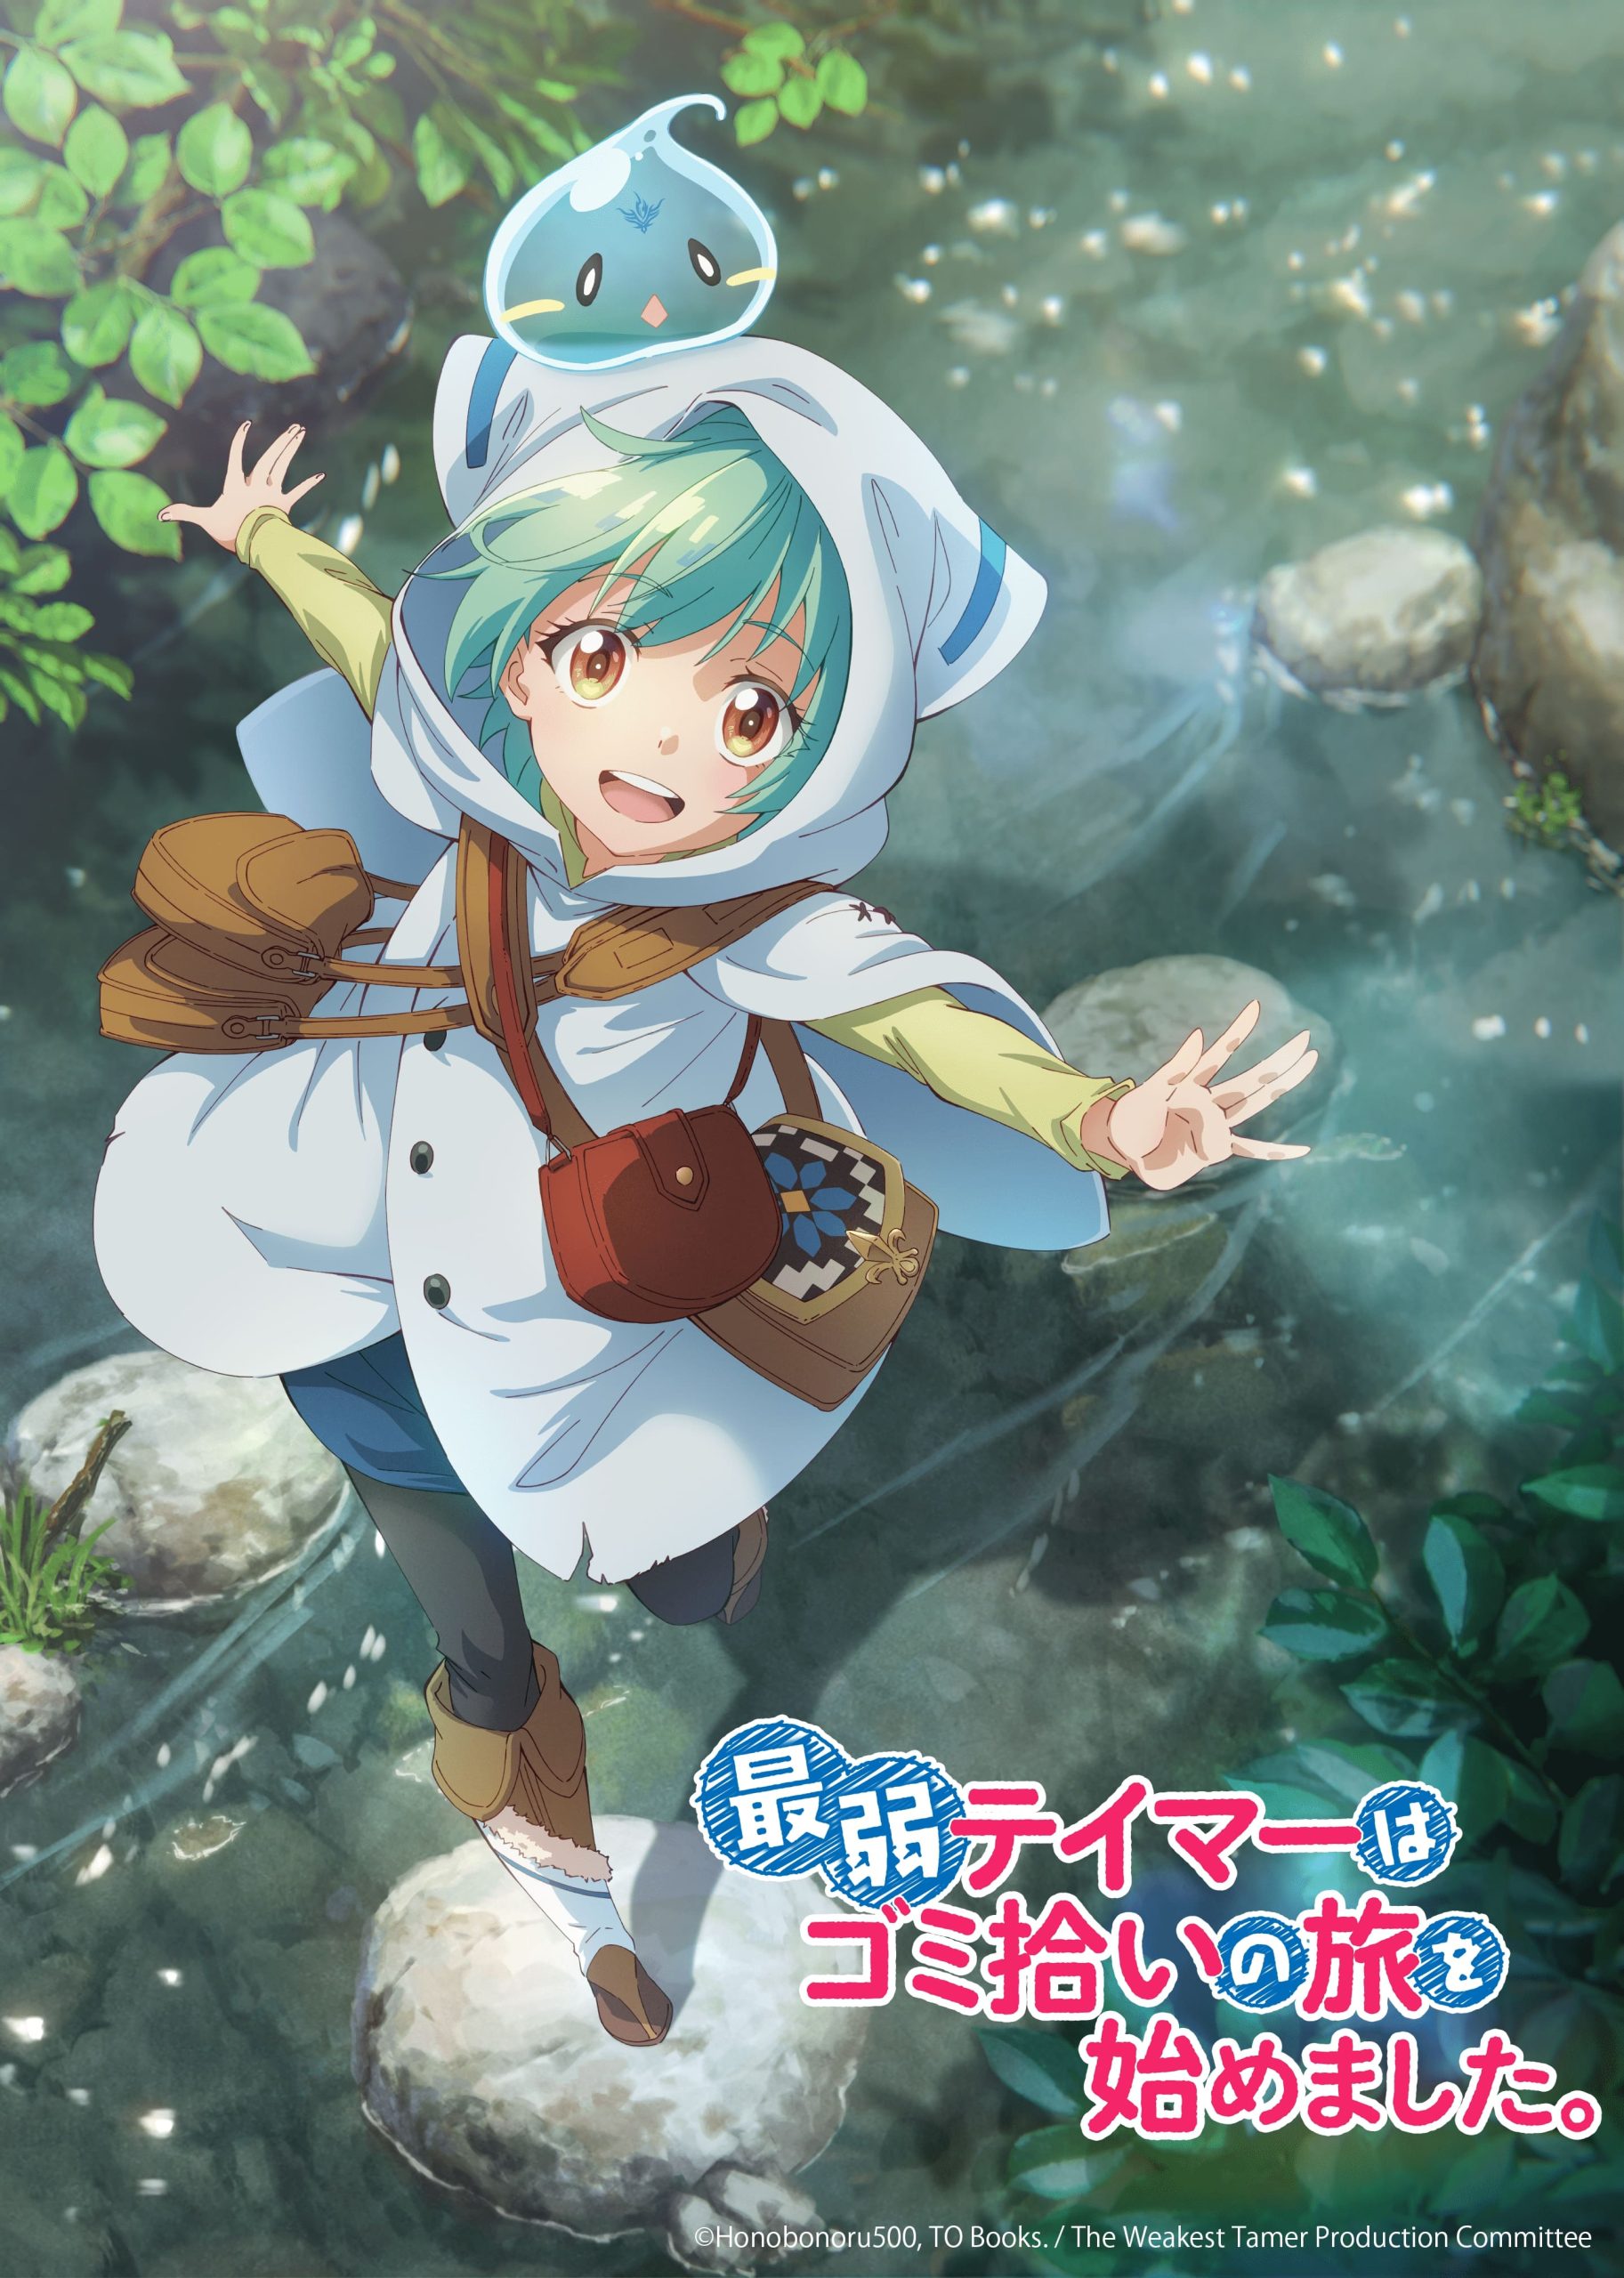 Isekai Shoukan wa Nidome Desu – Light Novel isekai tem anime anunciado -  Manga Livre RS